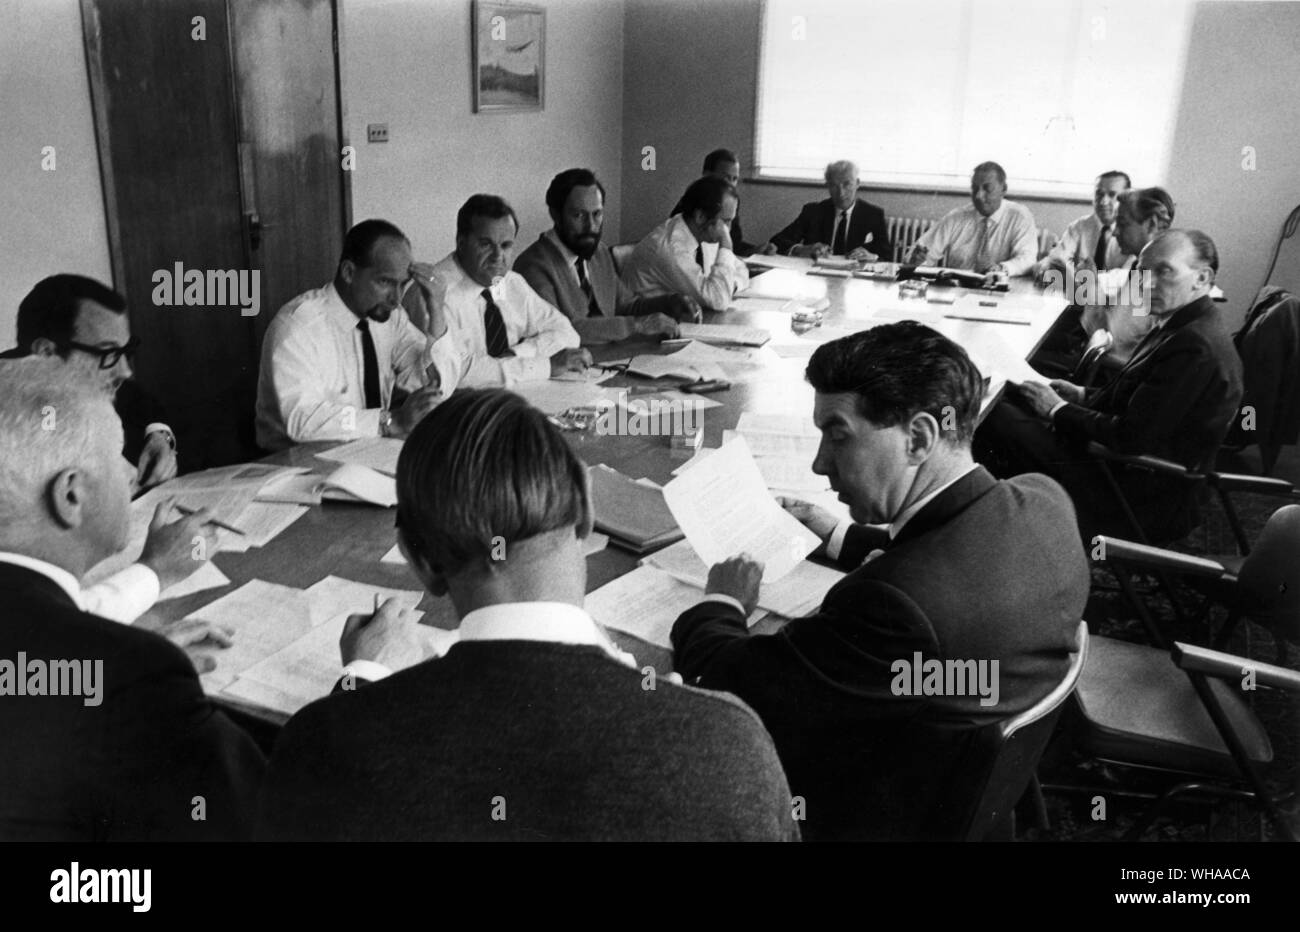 Les pilotes de la BOAC en grève à minuit.. Les membres de la BALPA ( l'Association des pilotes de ligne ) répondent à leur siège social à Harlington près de l'aéroport de Heathrow. 15 juin 1968. Banque D'Images